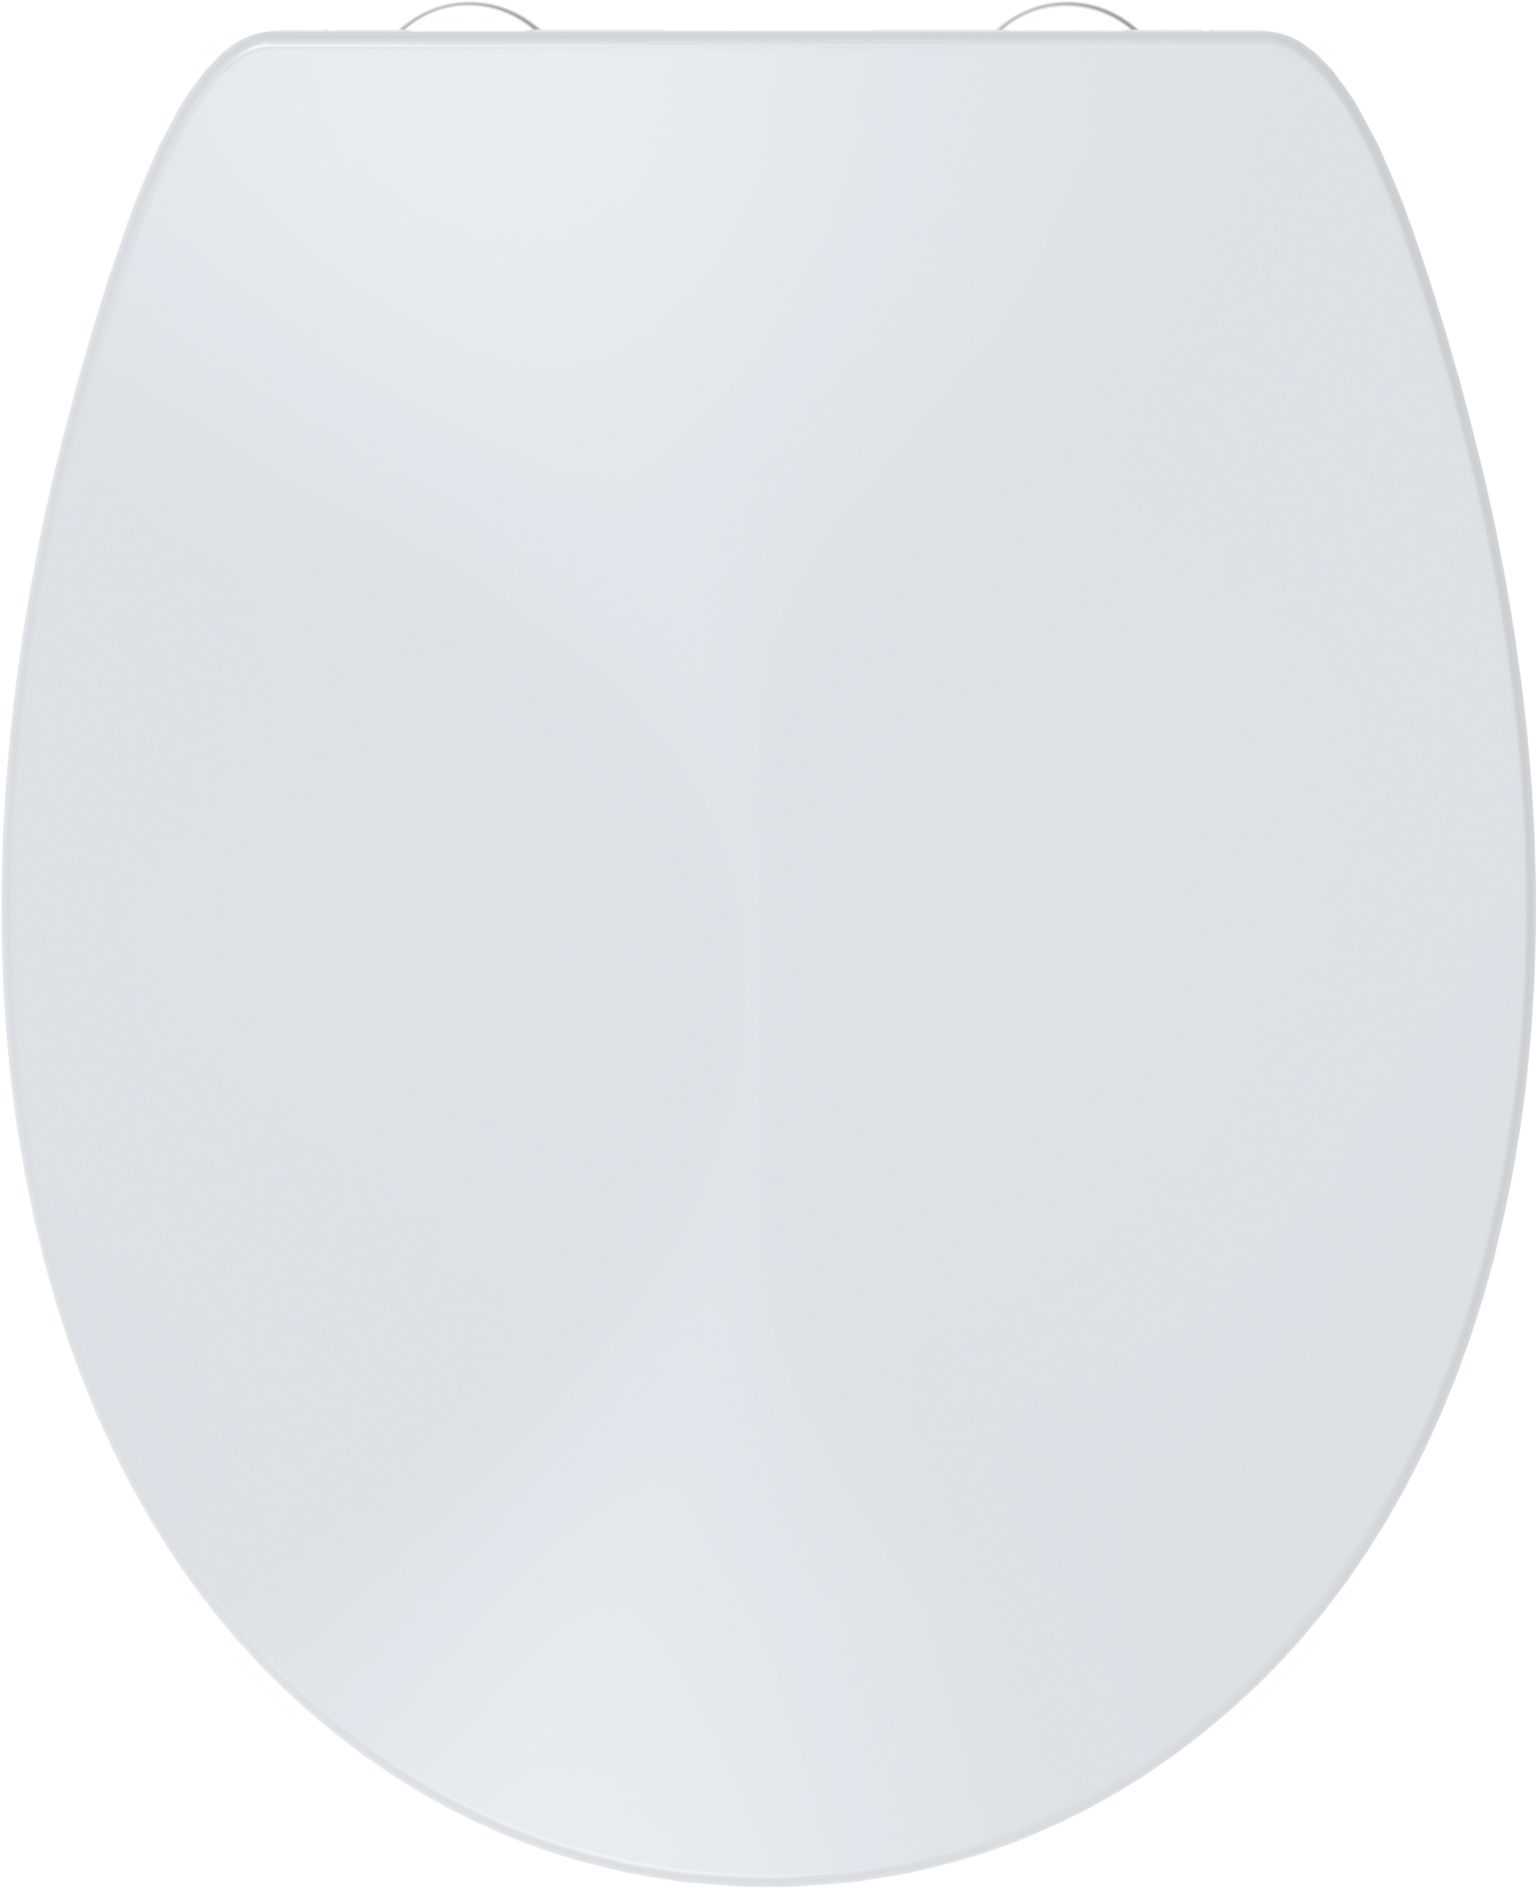 Toilet seat Aquarius S, white